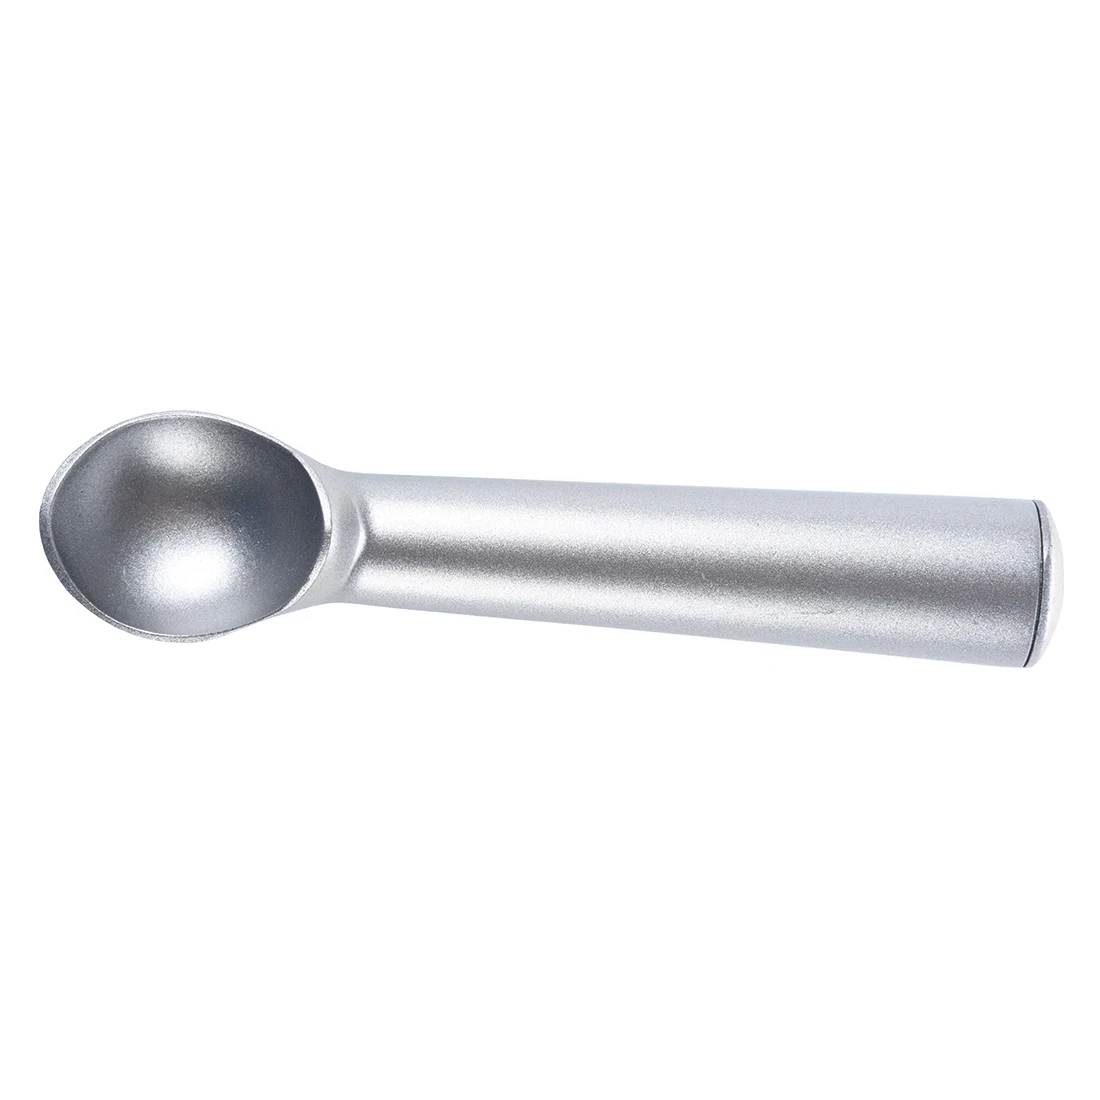 1 шт., алюминиевая ложка для мороженого, антипригарная, антифриз, ковш, кухонный инструмент